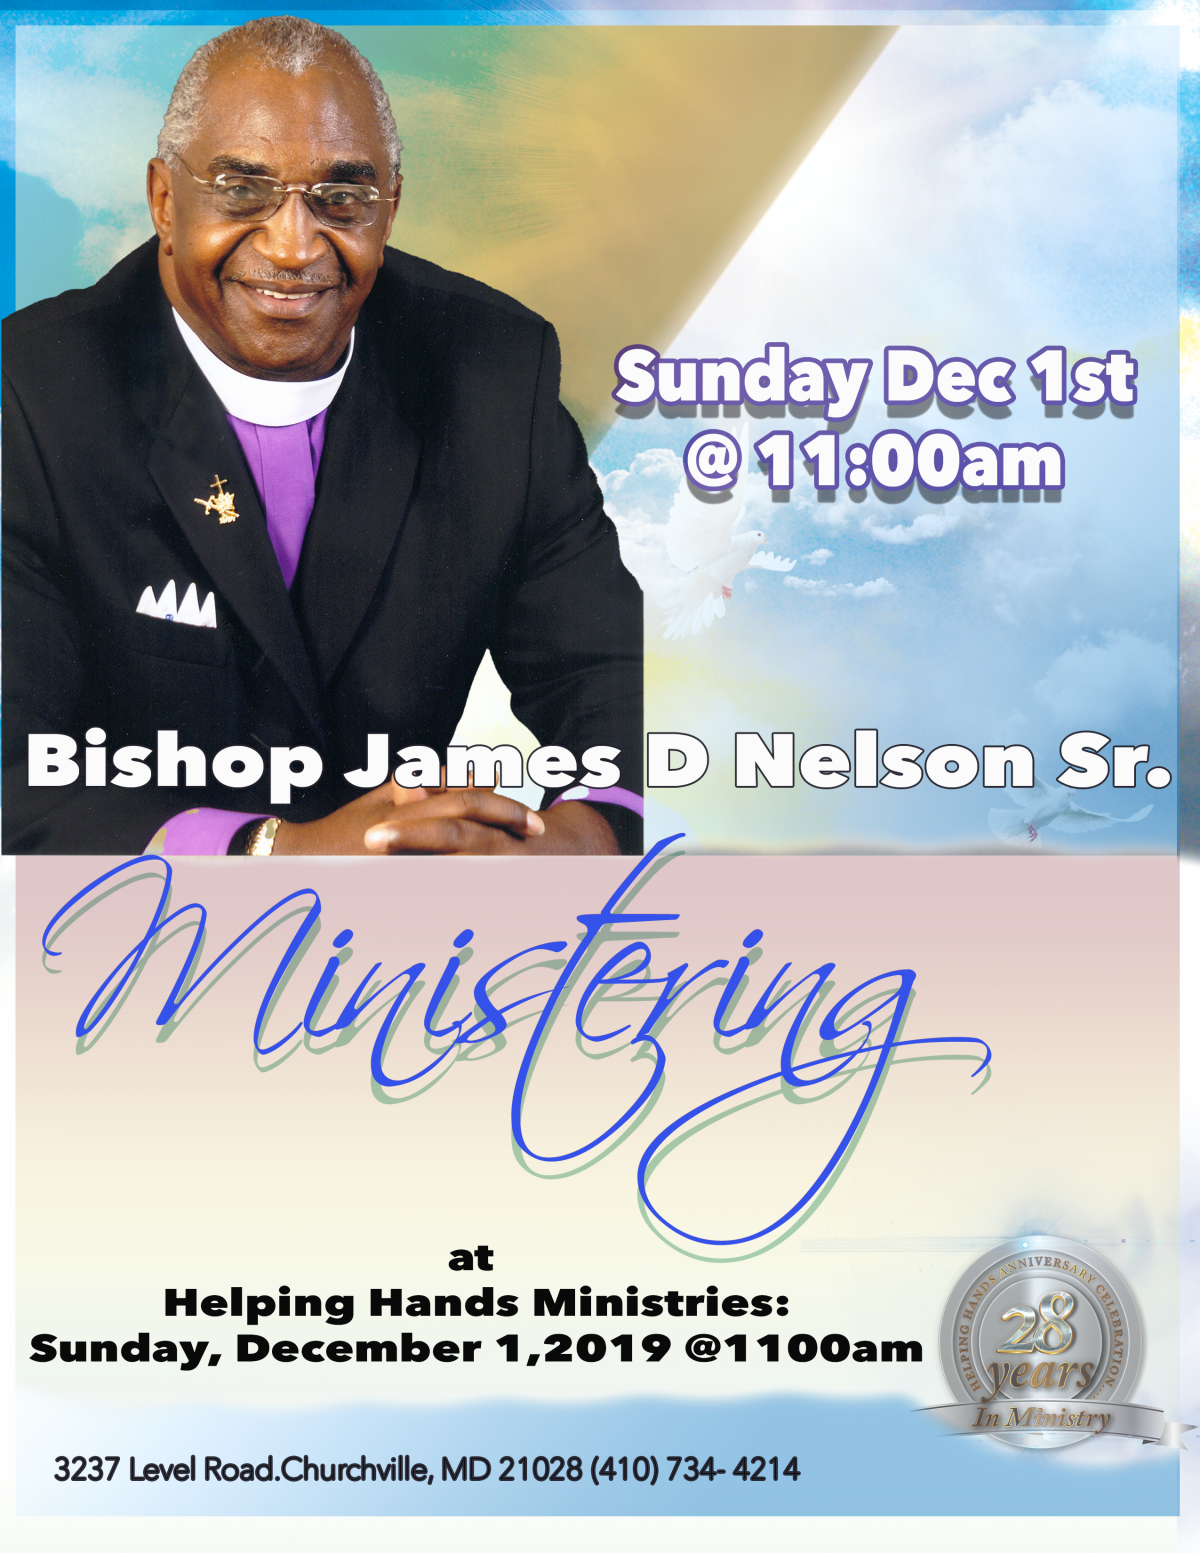 Bishop James D Nelson Sr